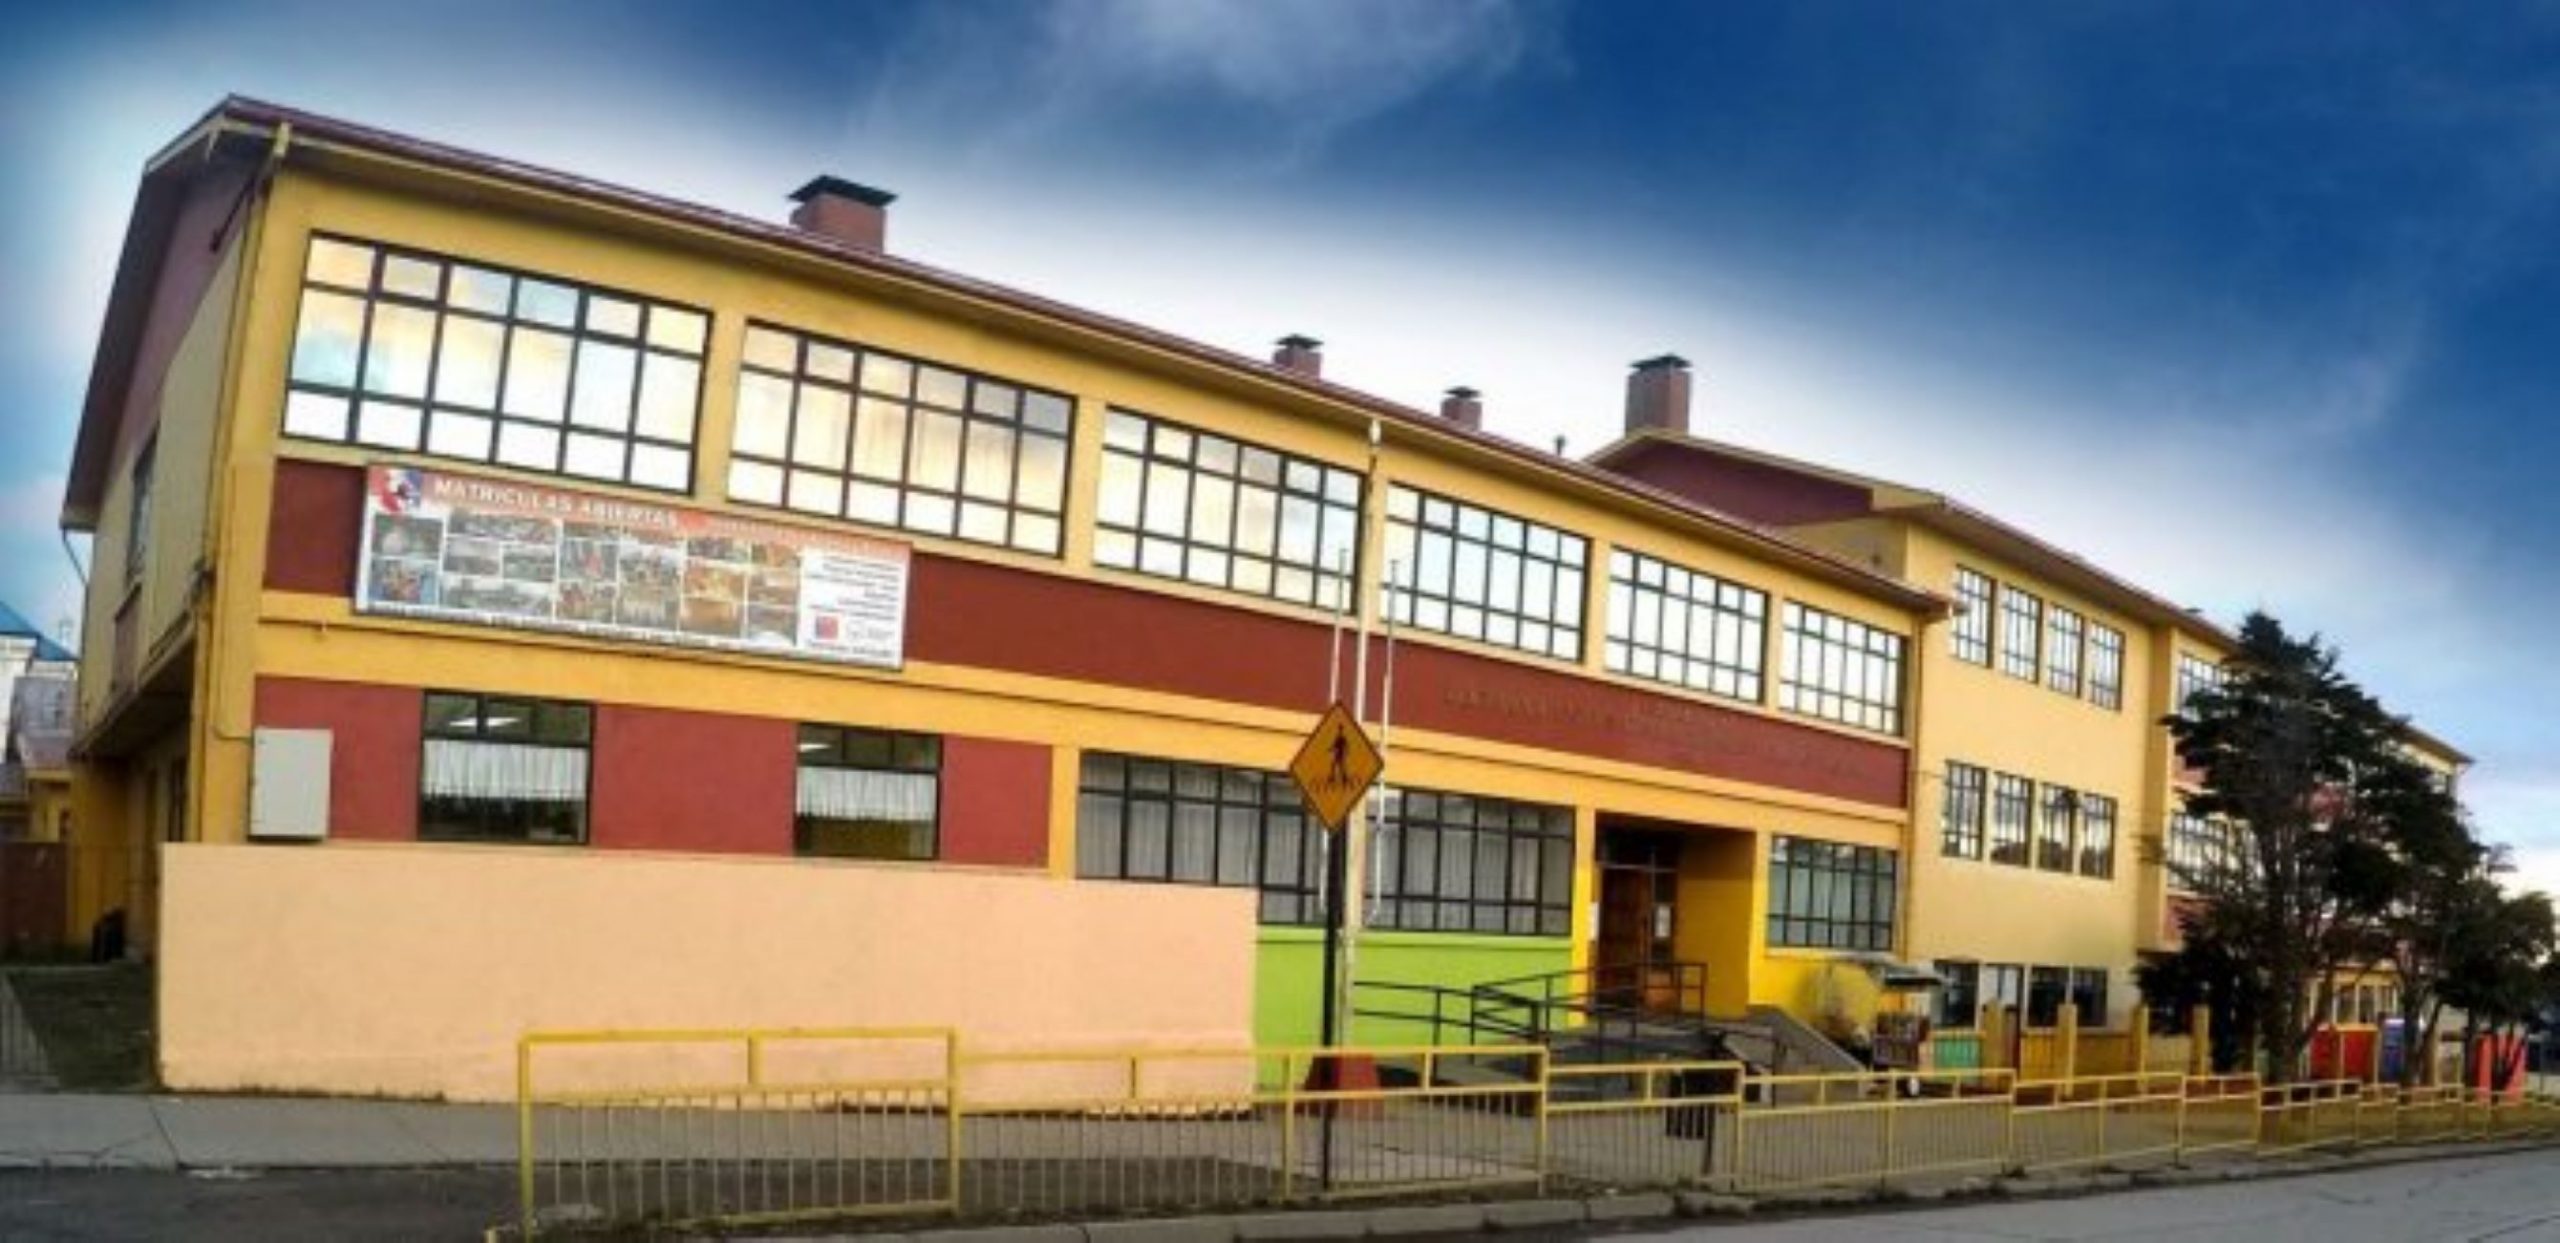 Persiste conflicto en la Escuela Bernardo O’Higgins de Punta Arenas, tras cambio de dirección